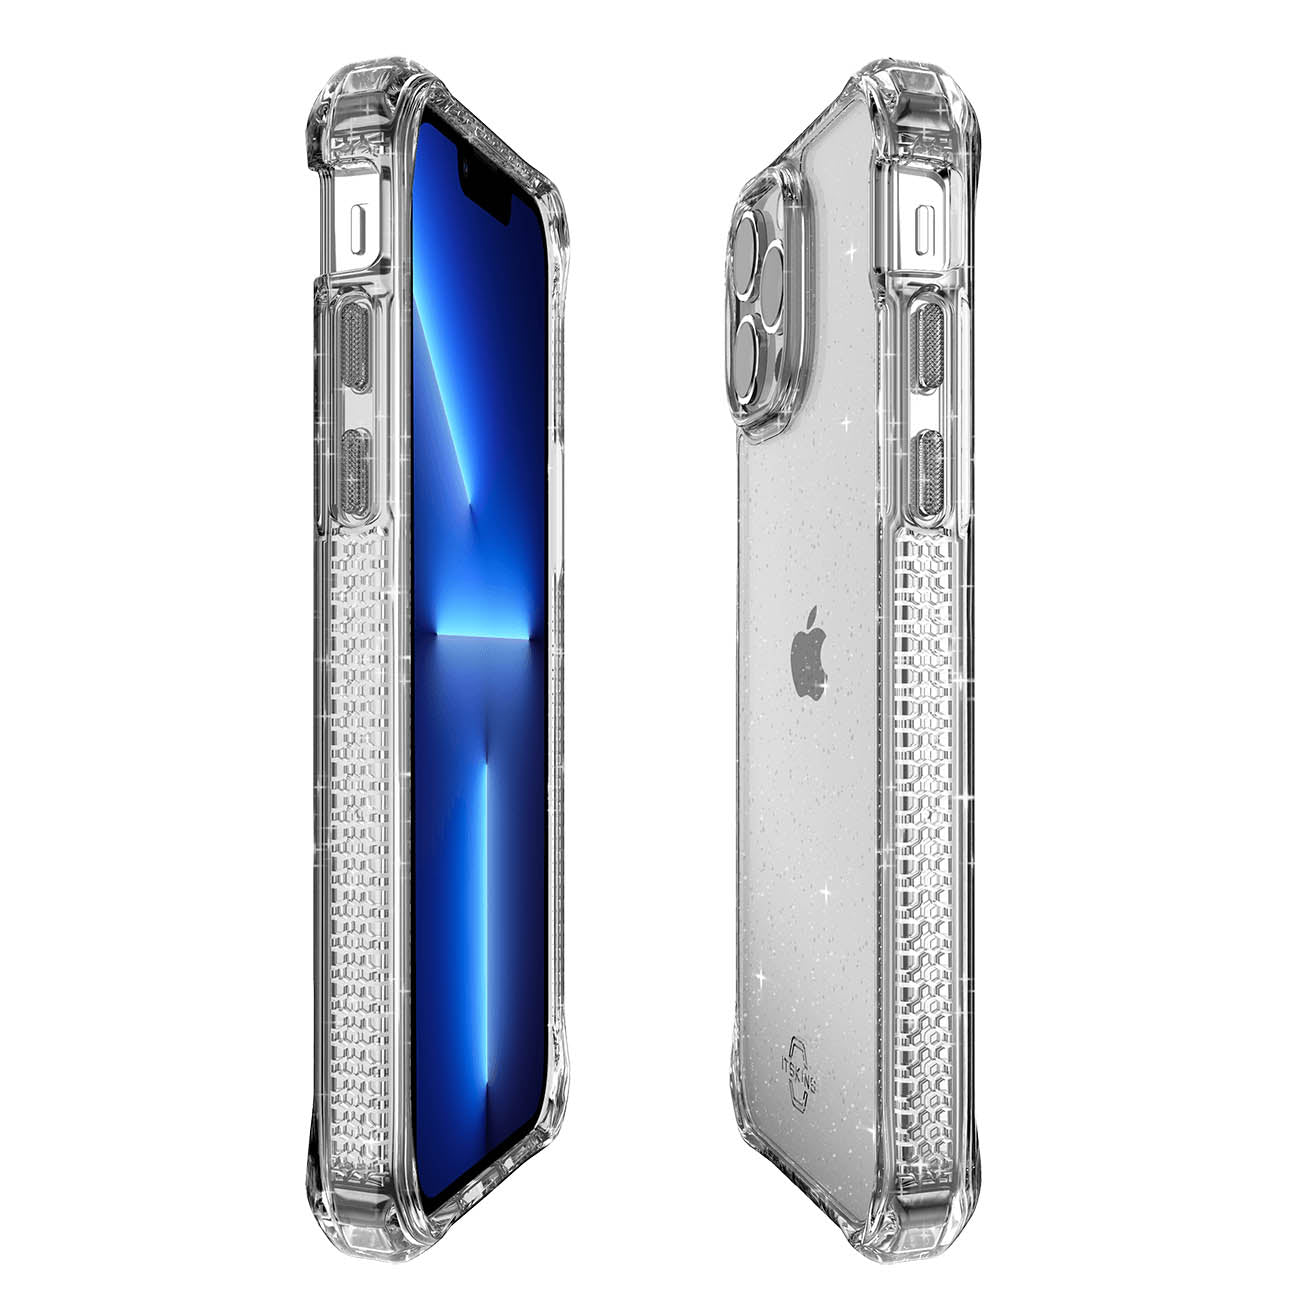 ITSKINS Hybrid Spark Case For iPhone 13 Pro - Transparent